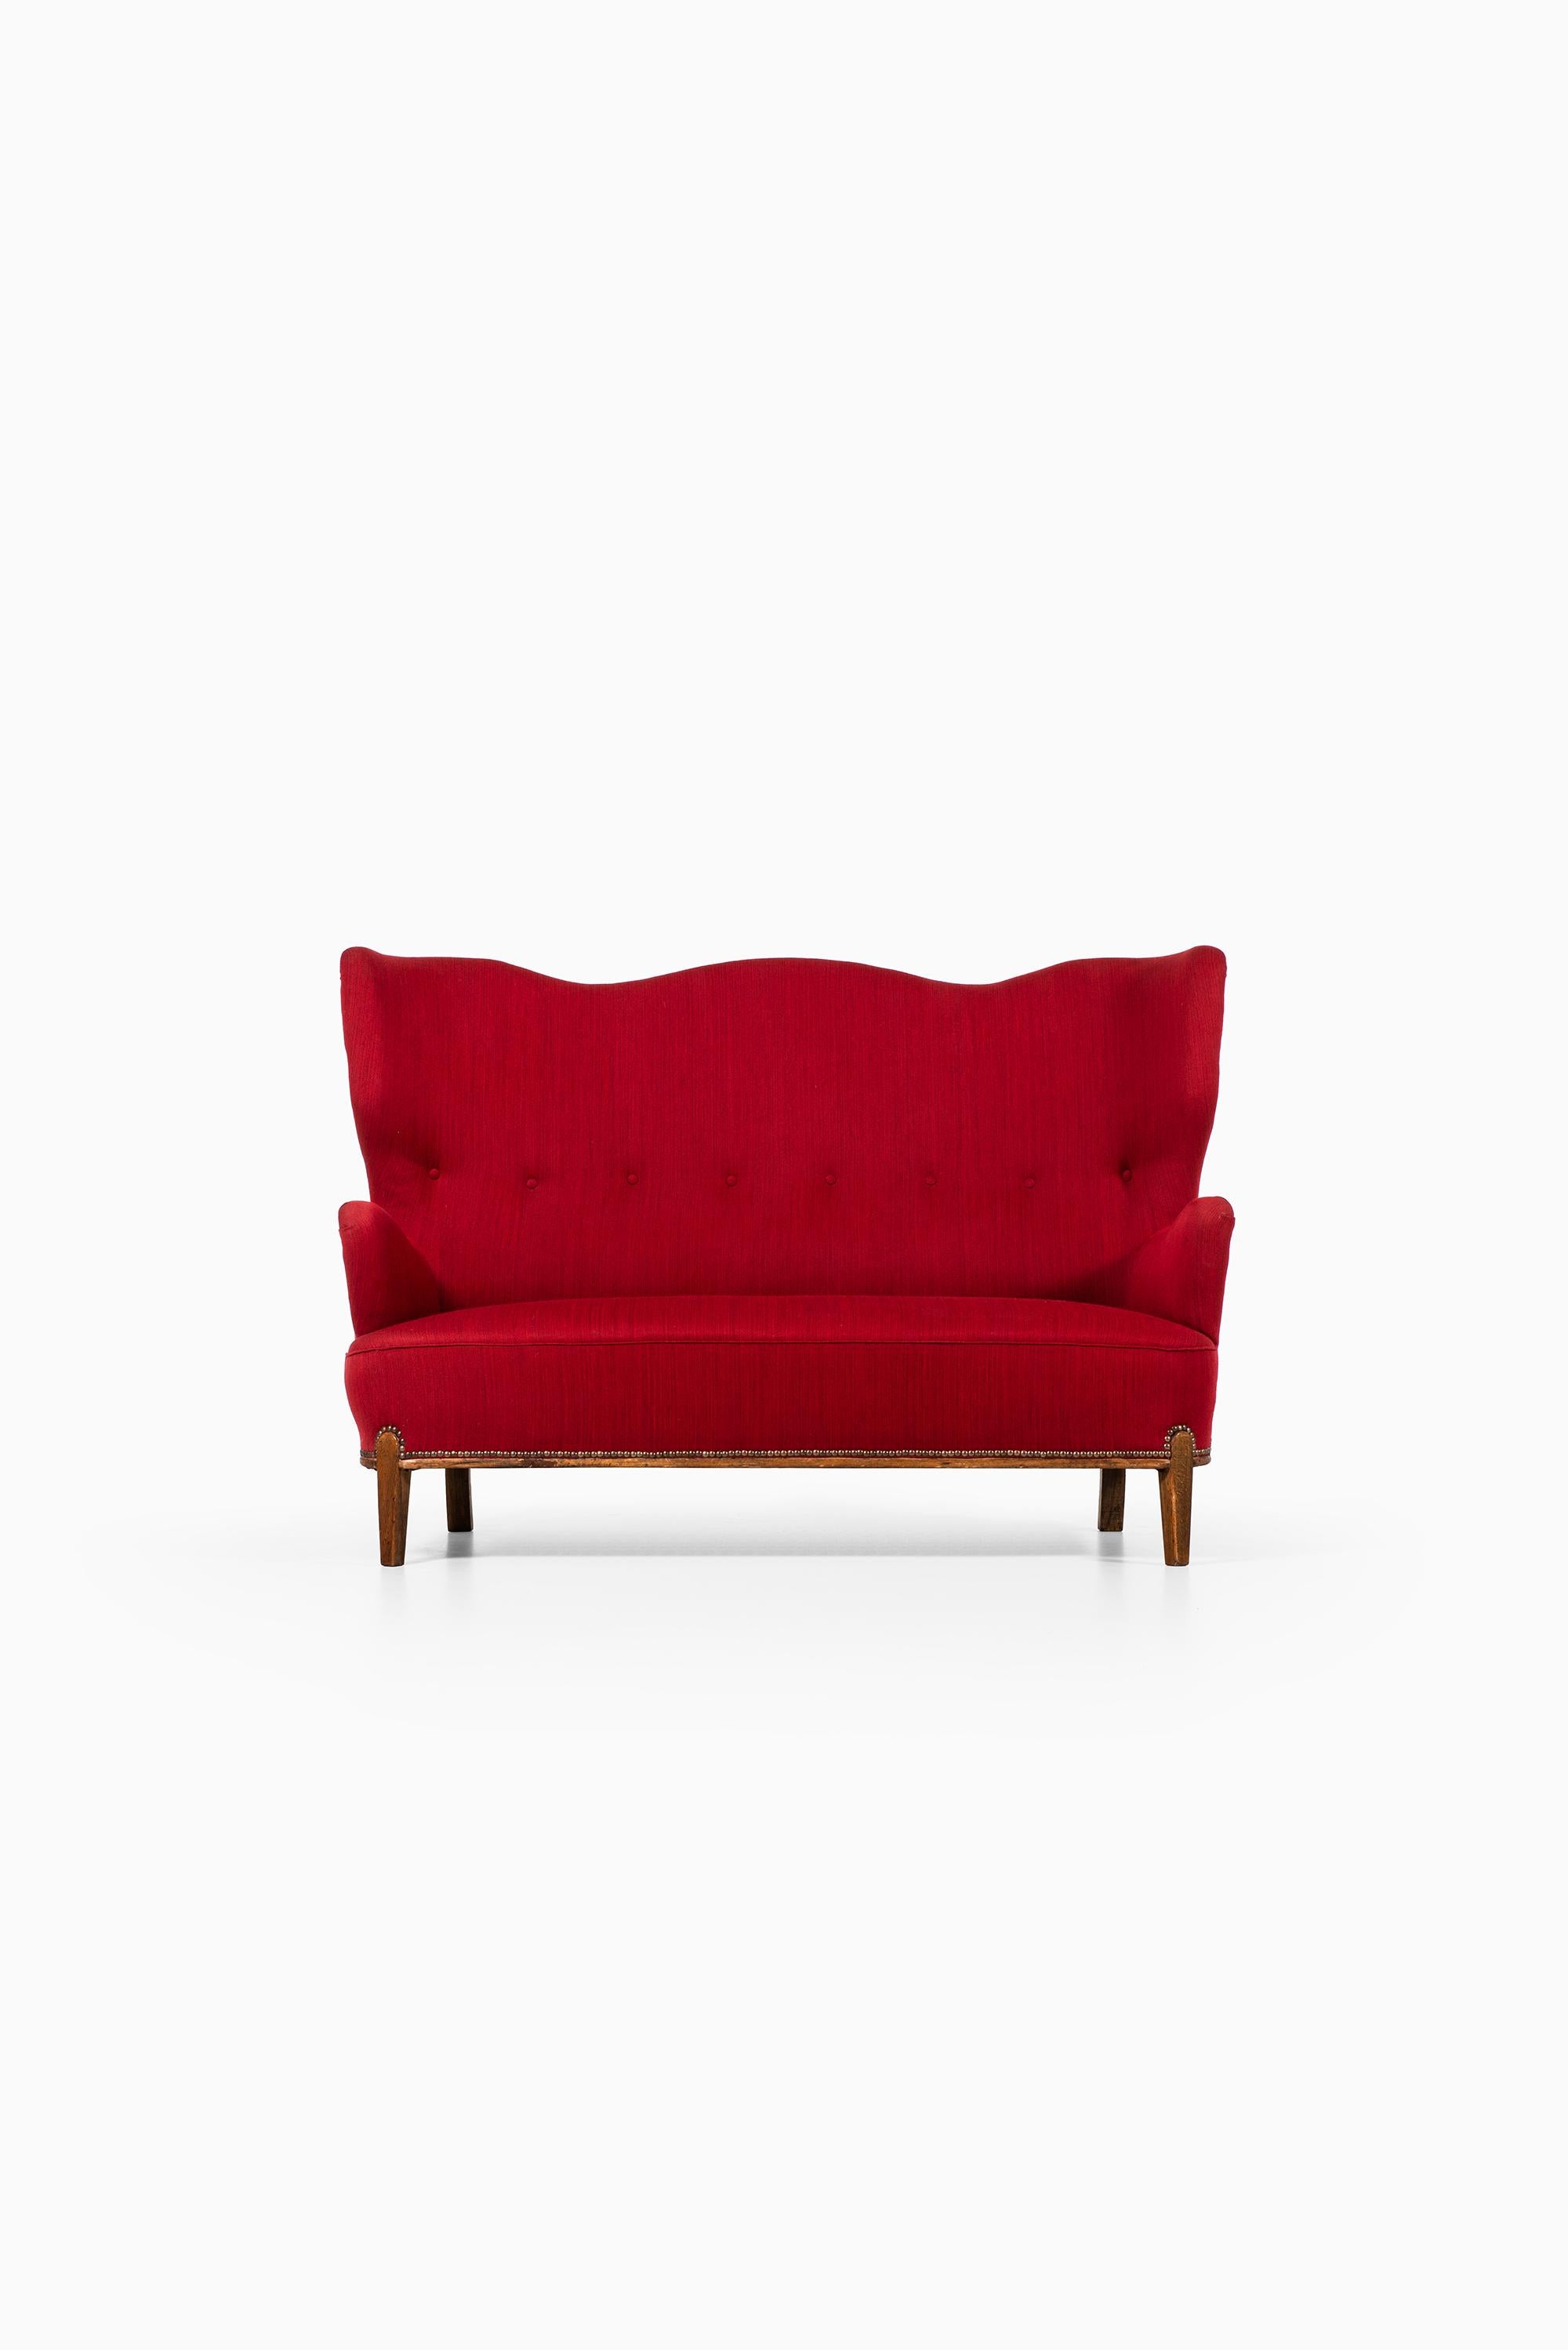 Seltenes Sofa:: entworfen von Bertil Söderberg. Produziert von Nordiska Kompaniet in Schweden.